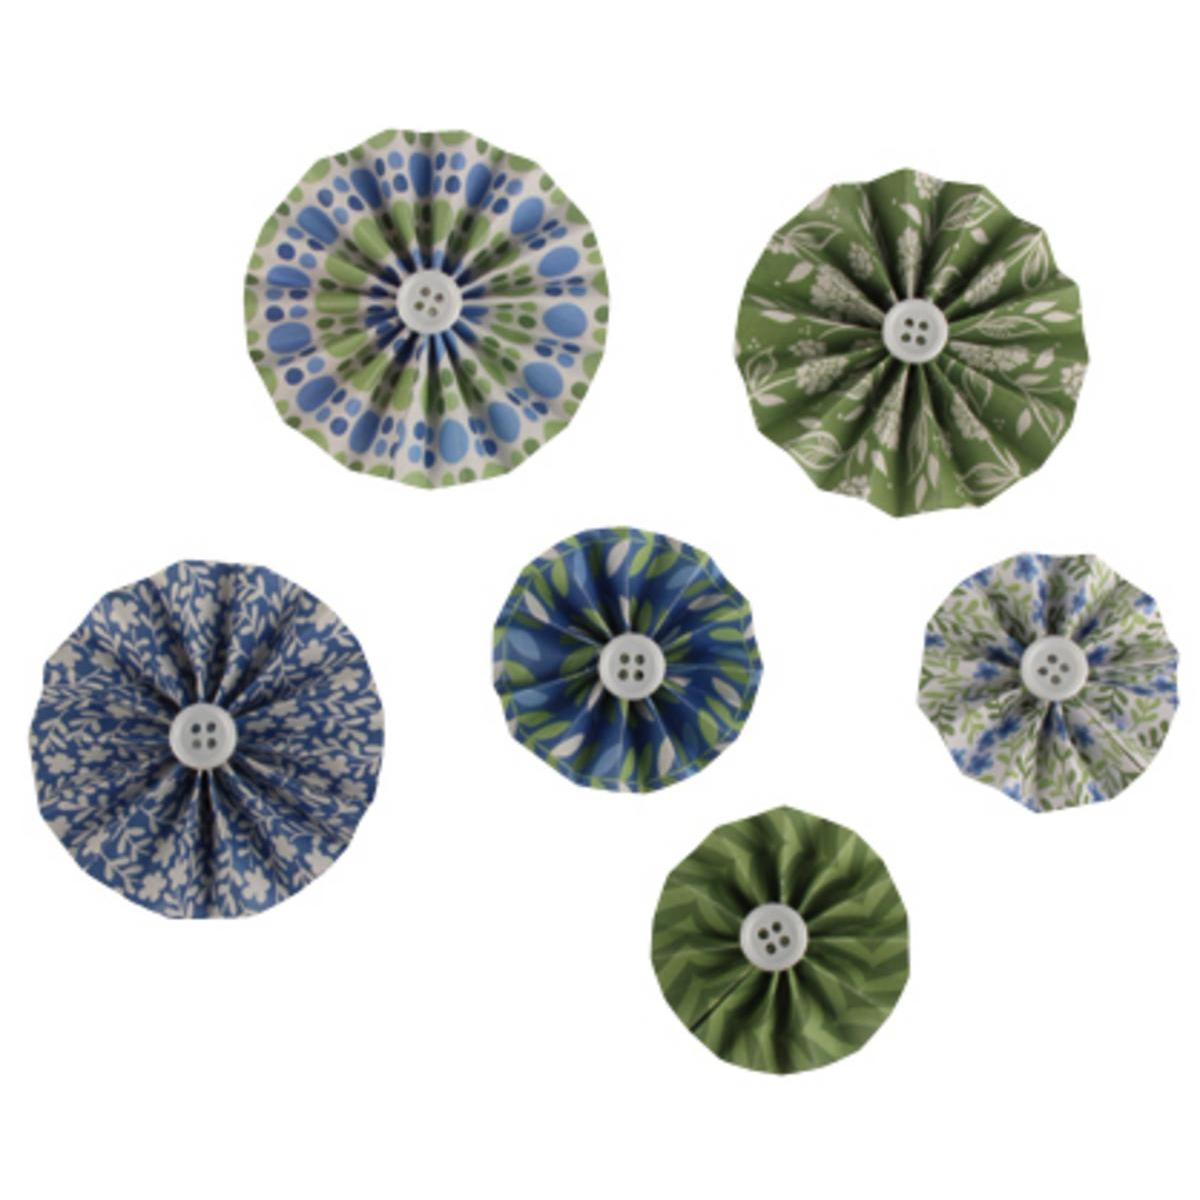 Rosaces décoratives - Papier - 4 à 6 cm - Bleu, Vert